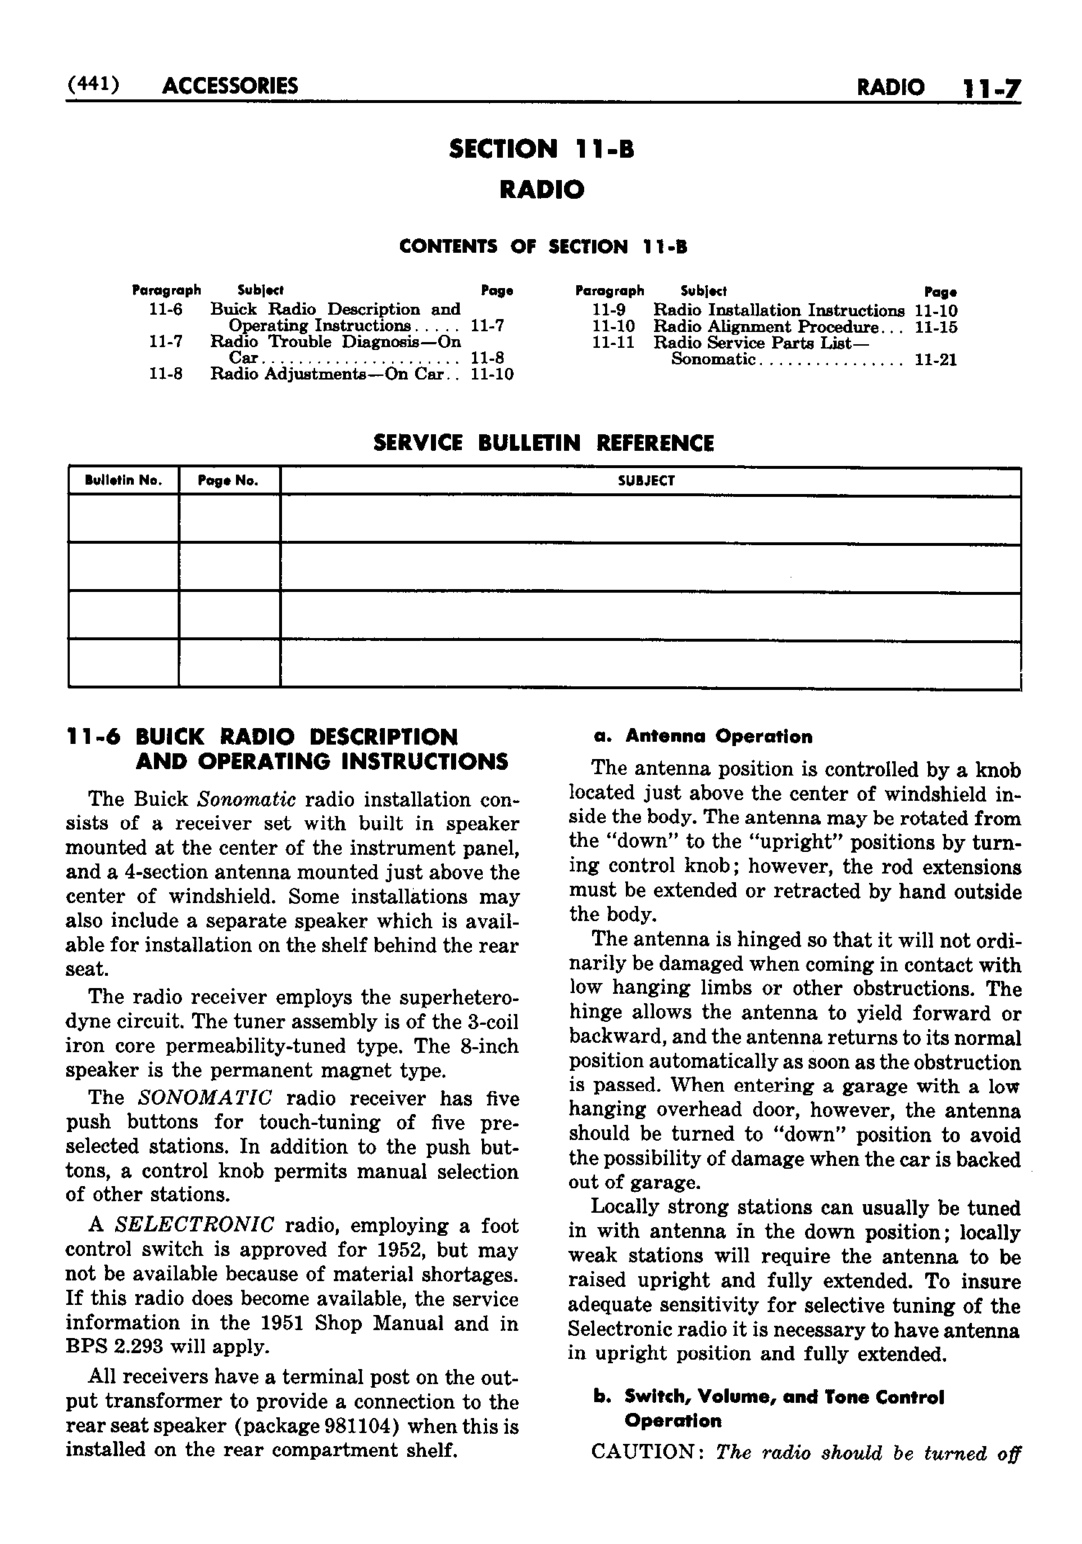 n_12 1952 Buick Shop Manual - Accessories-007-007.jpg